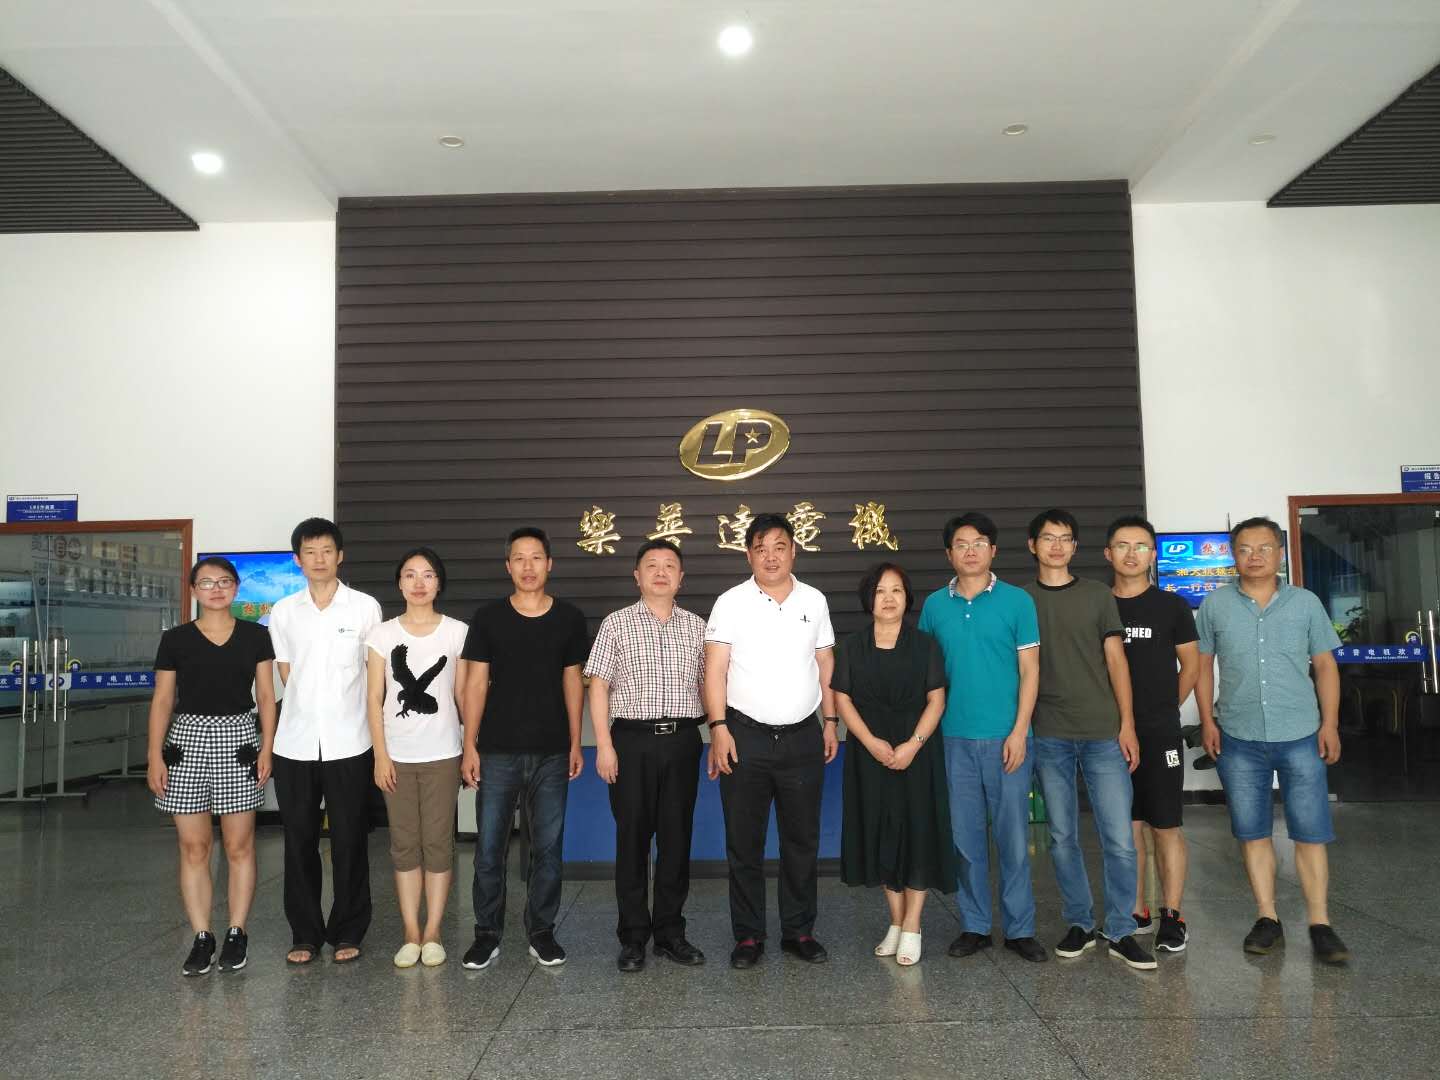 提升企业创新力 乐普集团联手湘潭大学成立“乐普电机研究所”